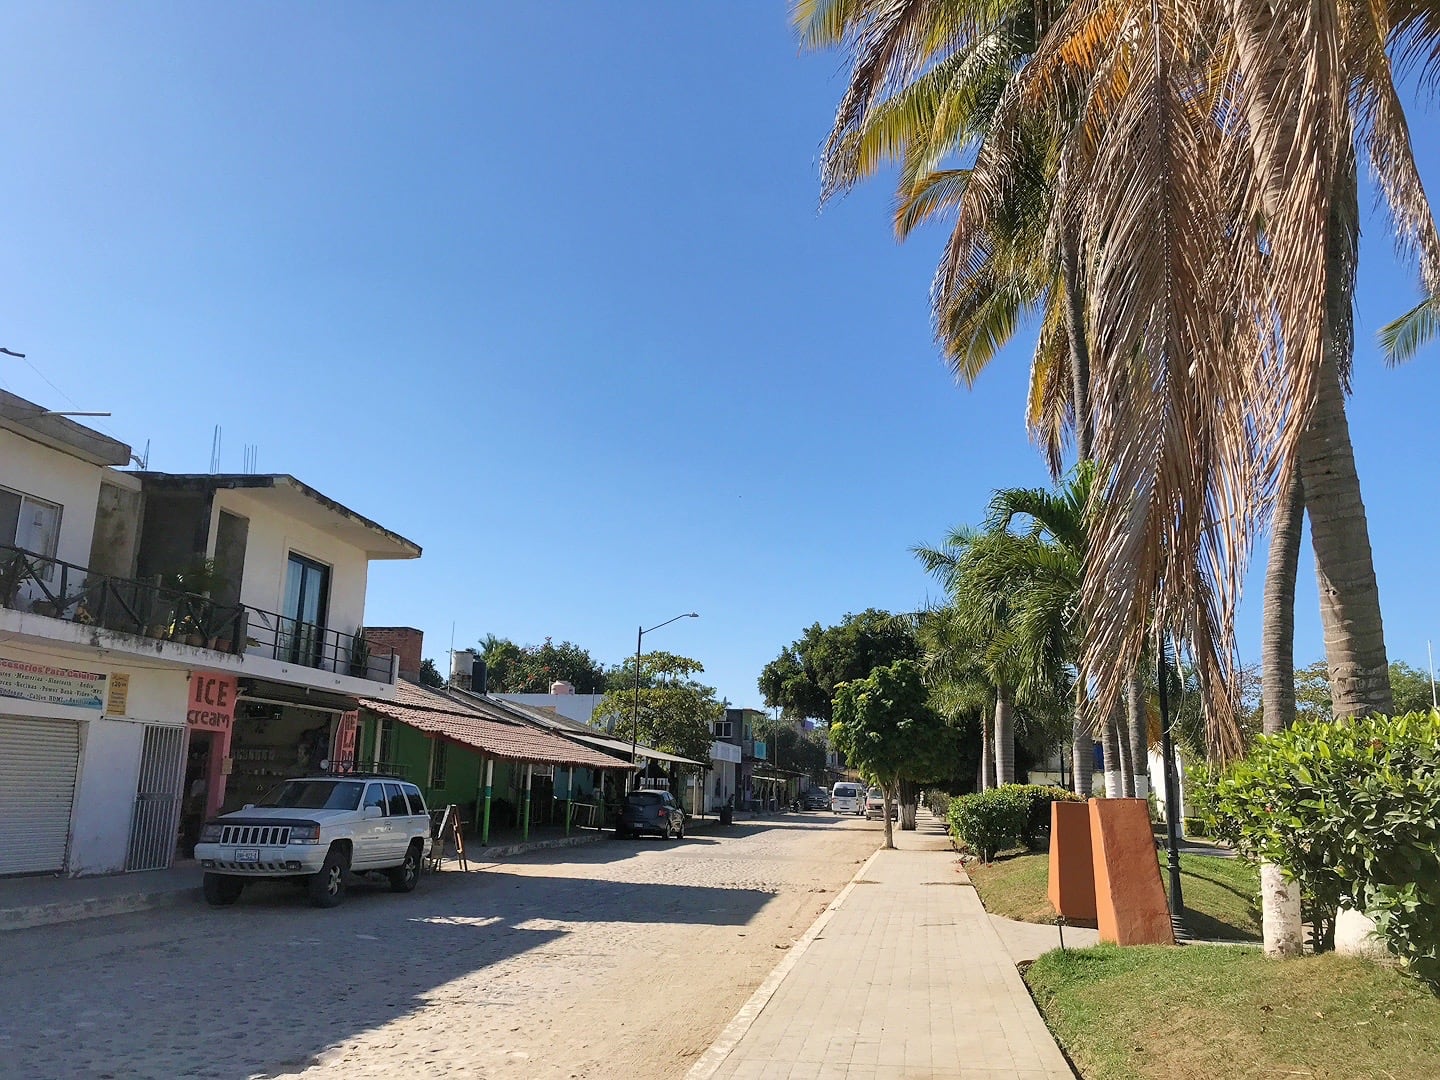 Road near the main plaza in Higuera Blanca Nayarit Mexico